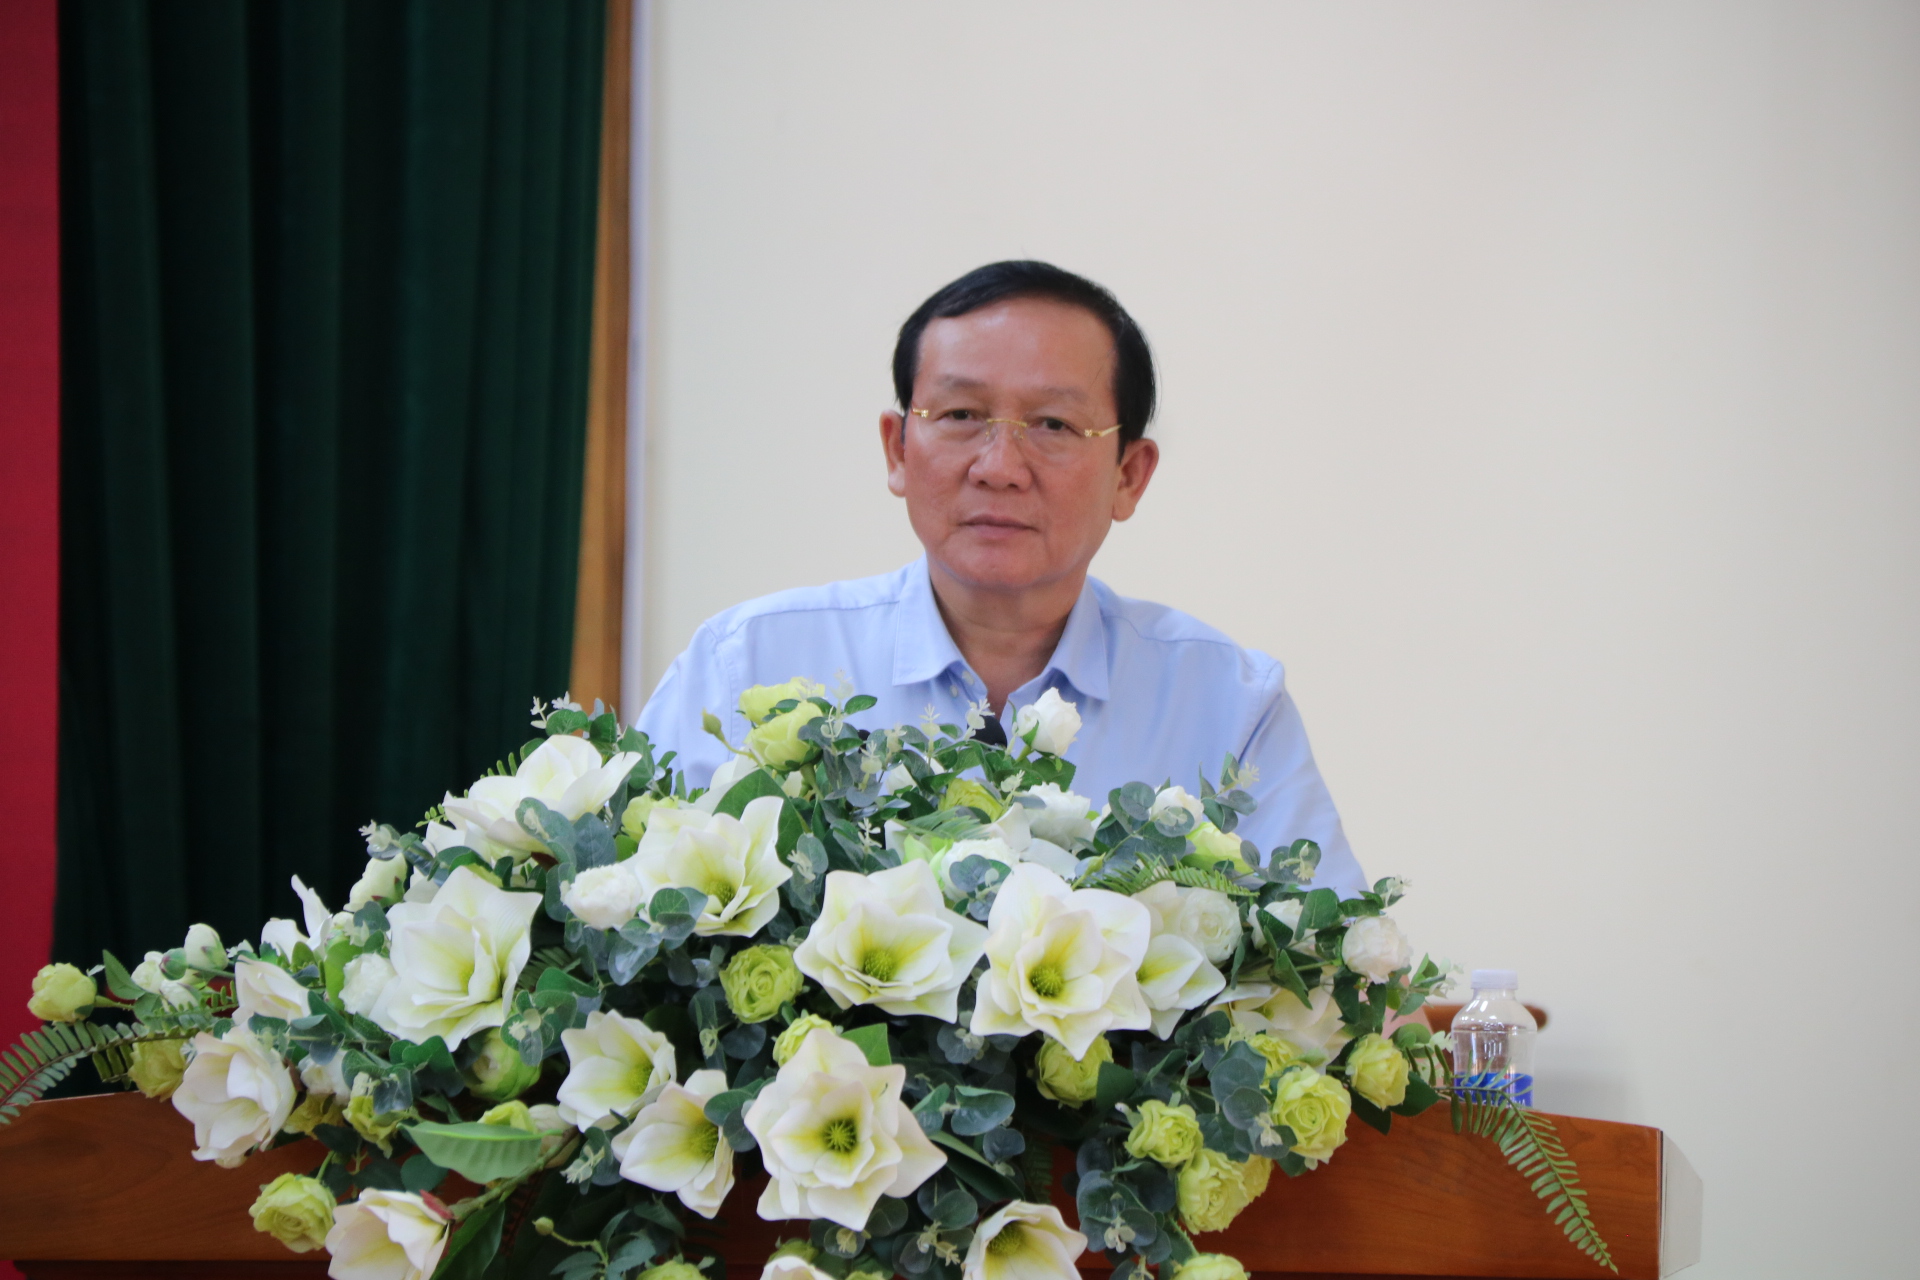 Đồng chí Nguyễn Văn Hoàng - Chủ tịch UBND huyện Lâm Hà phát biểu khai mạc